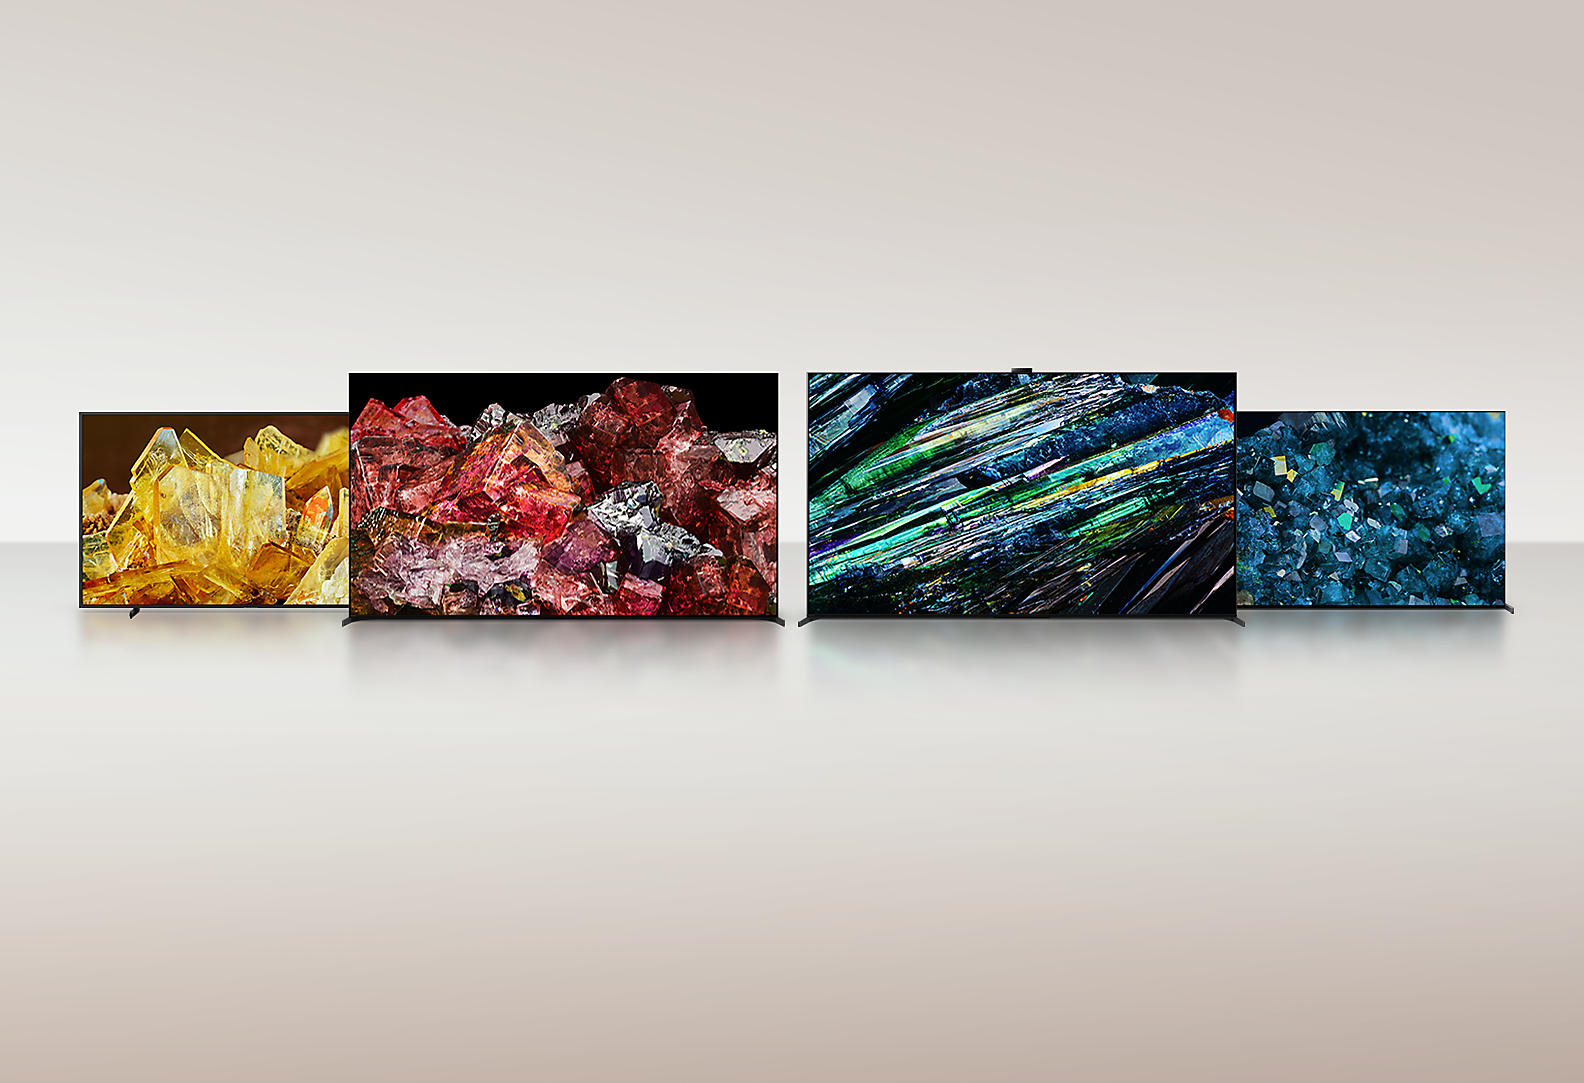 Cuatro televisores BRAVIA XR que muestran imágenes en pantalla completa de diferentes tipos de cristales con colores y detalles increíbles